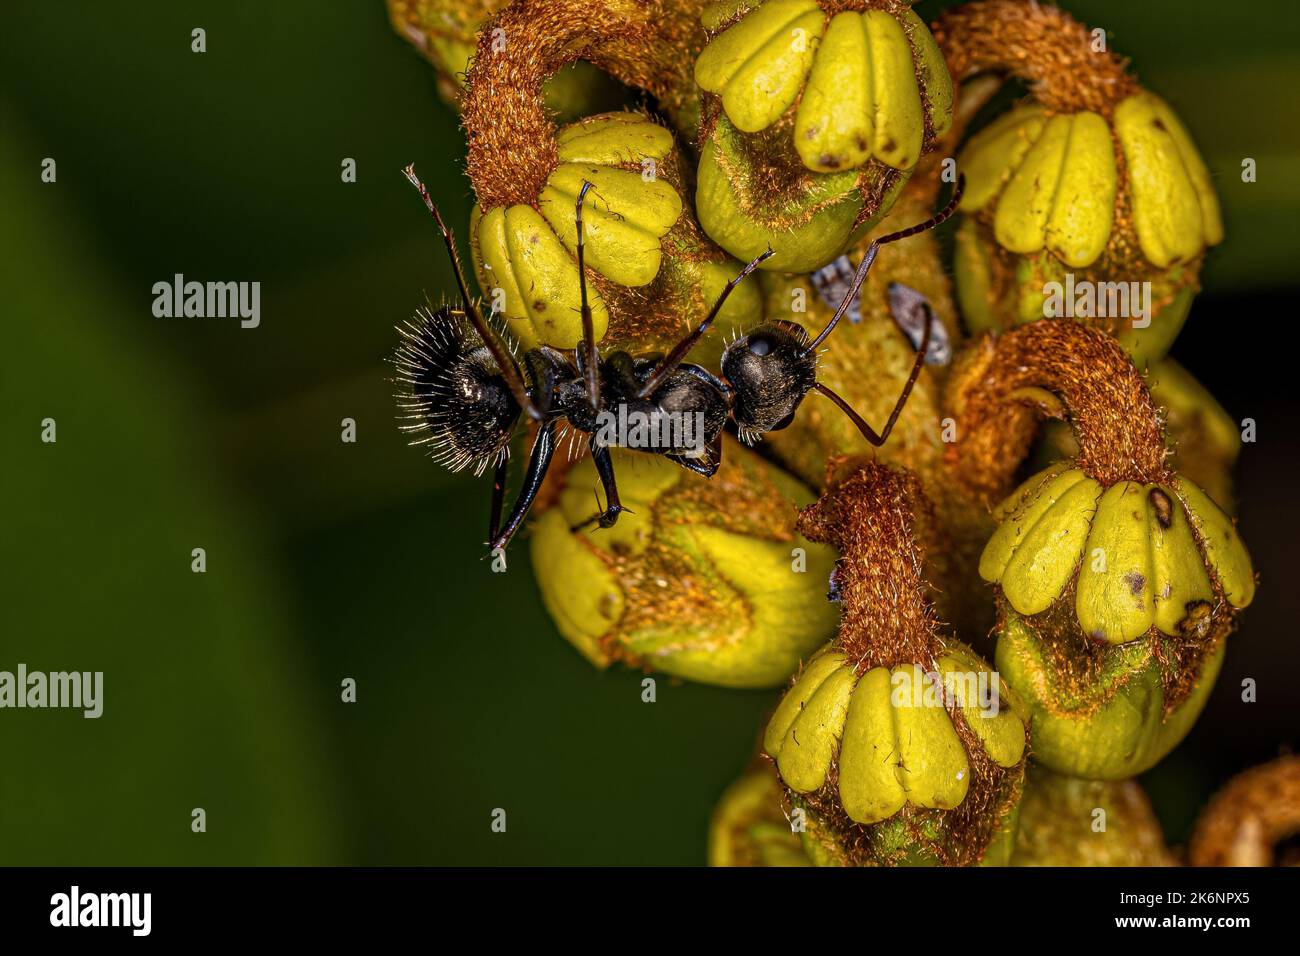 Adult Female Carpenter Ant of the genus Camponotus Stock Photo